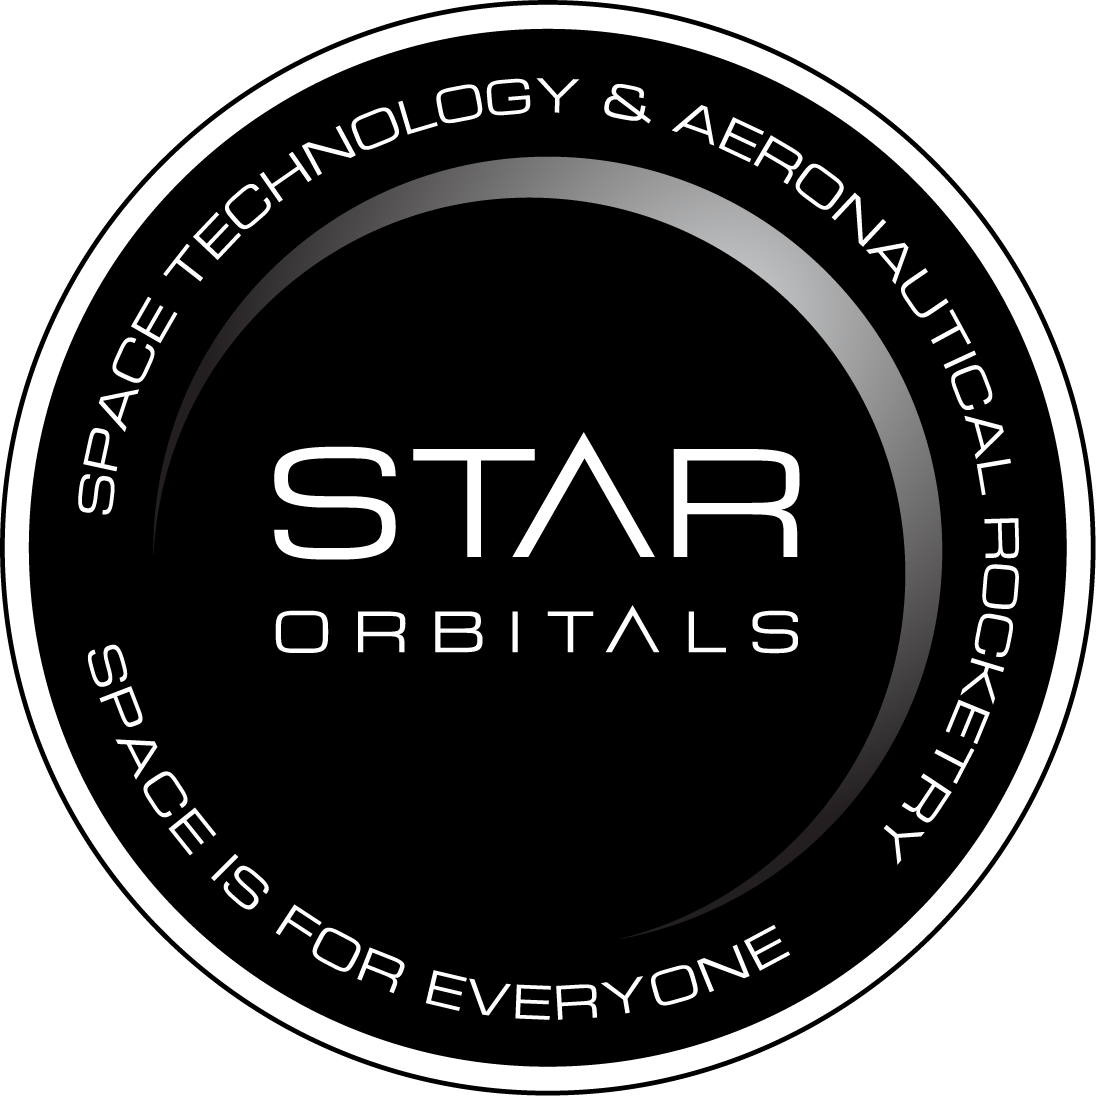 STAR Orbitals logo